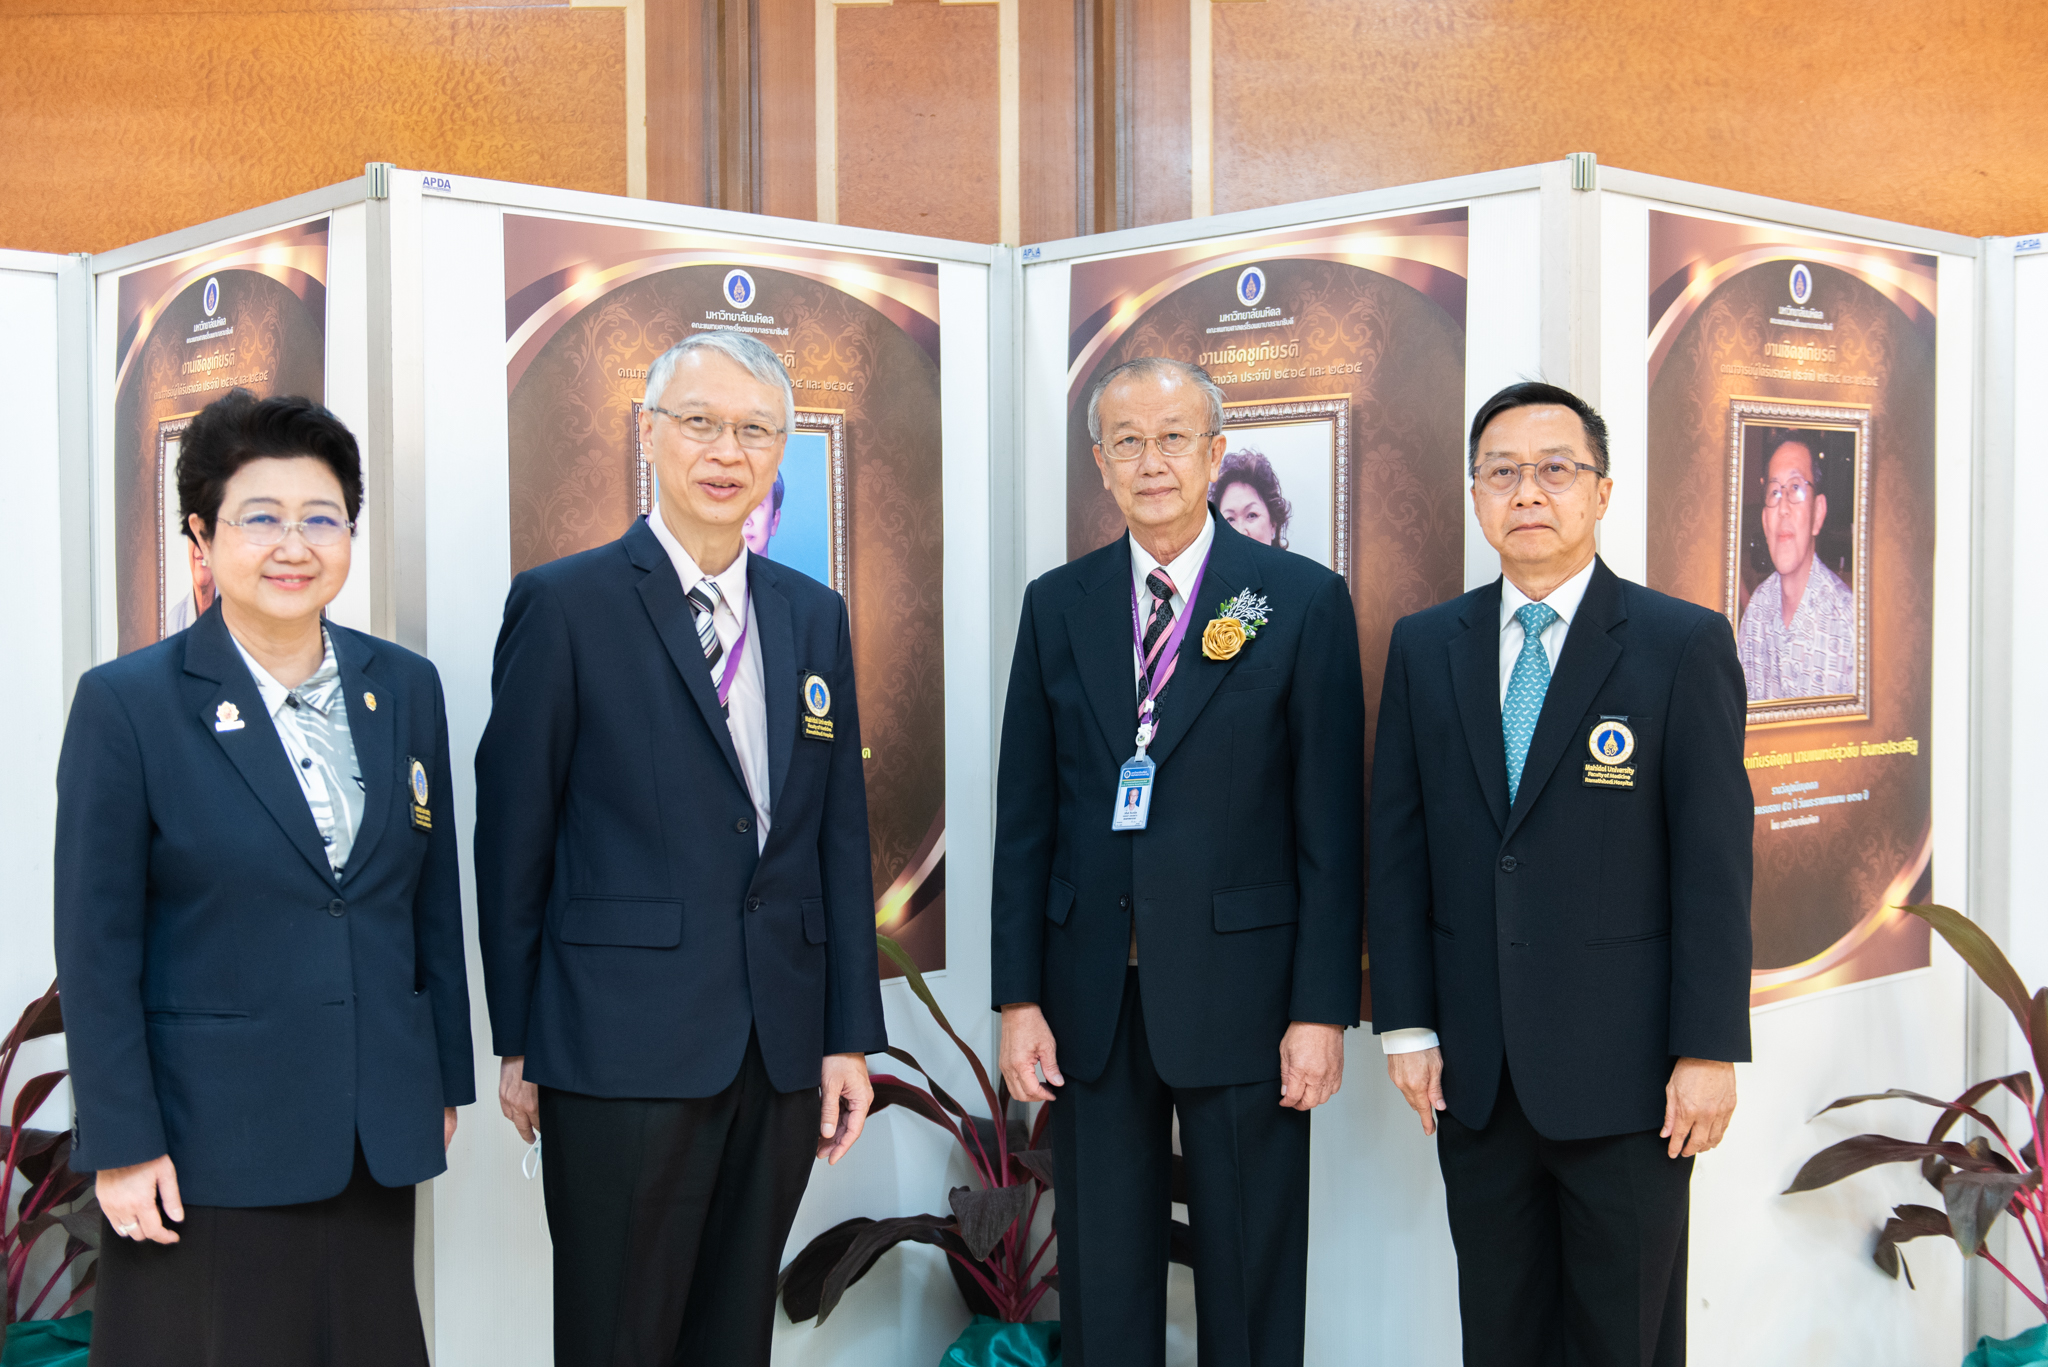 งานเชิดชูเกียรติคณาจารย์ผู้ได้รับรางวัล ประจำปี 2564 และประจำปี 2565